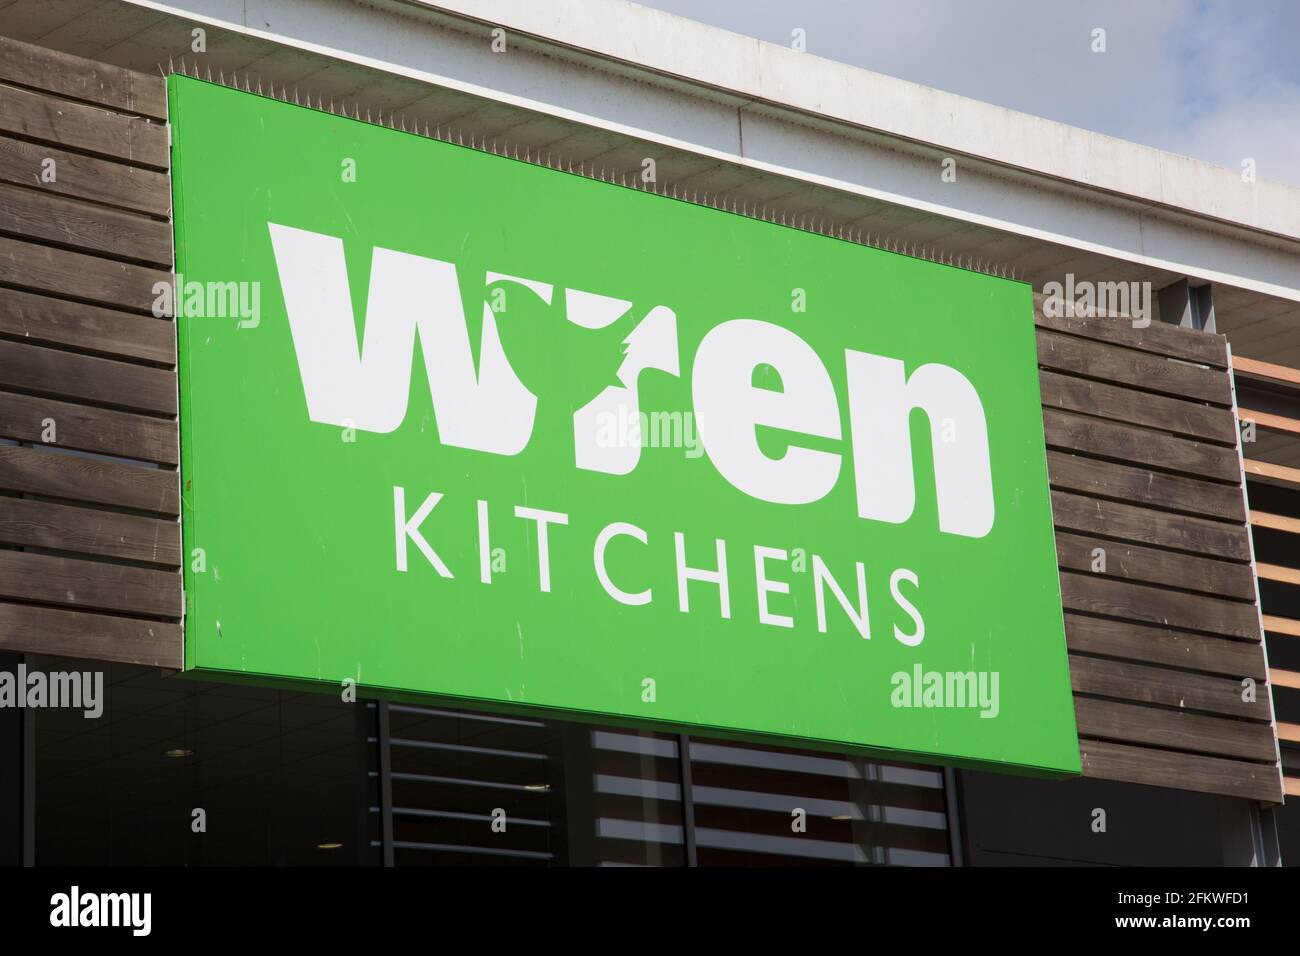 Wren Kitchens signage Stock Photo